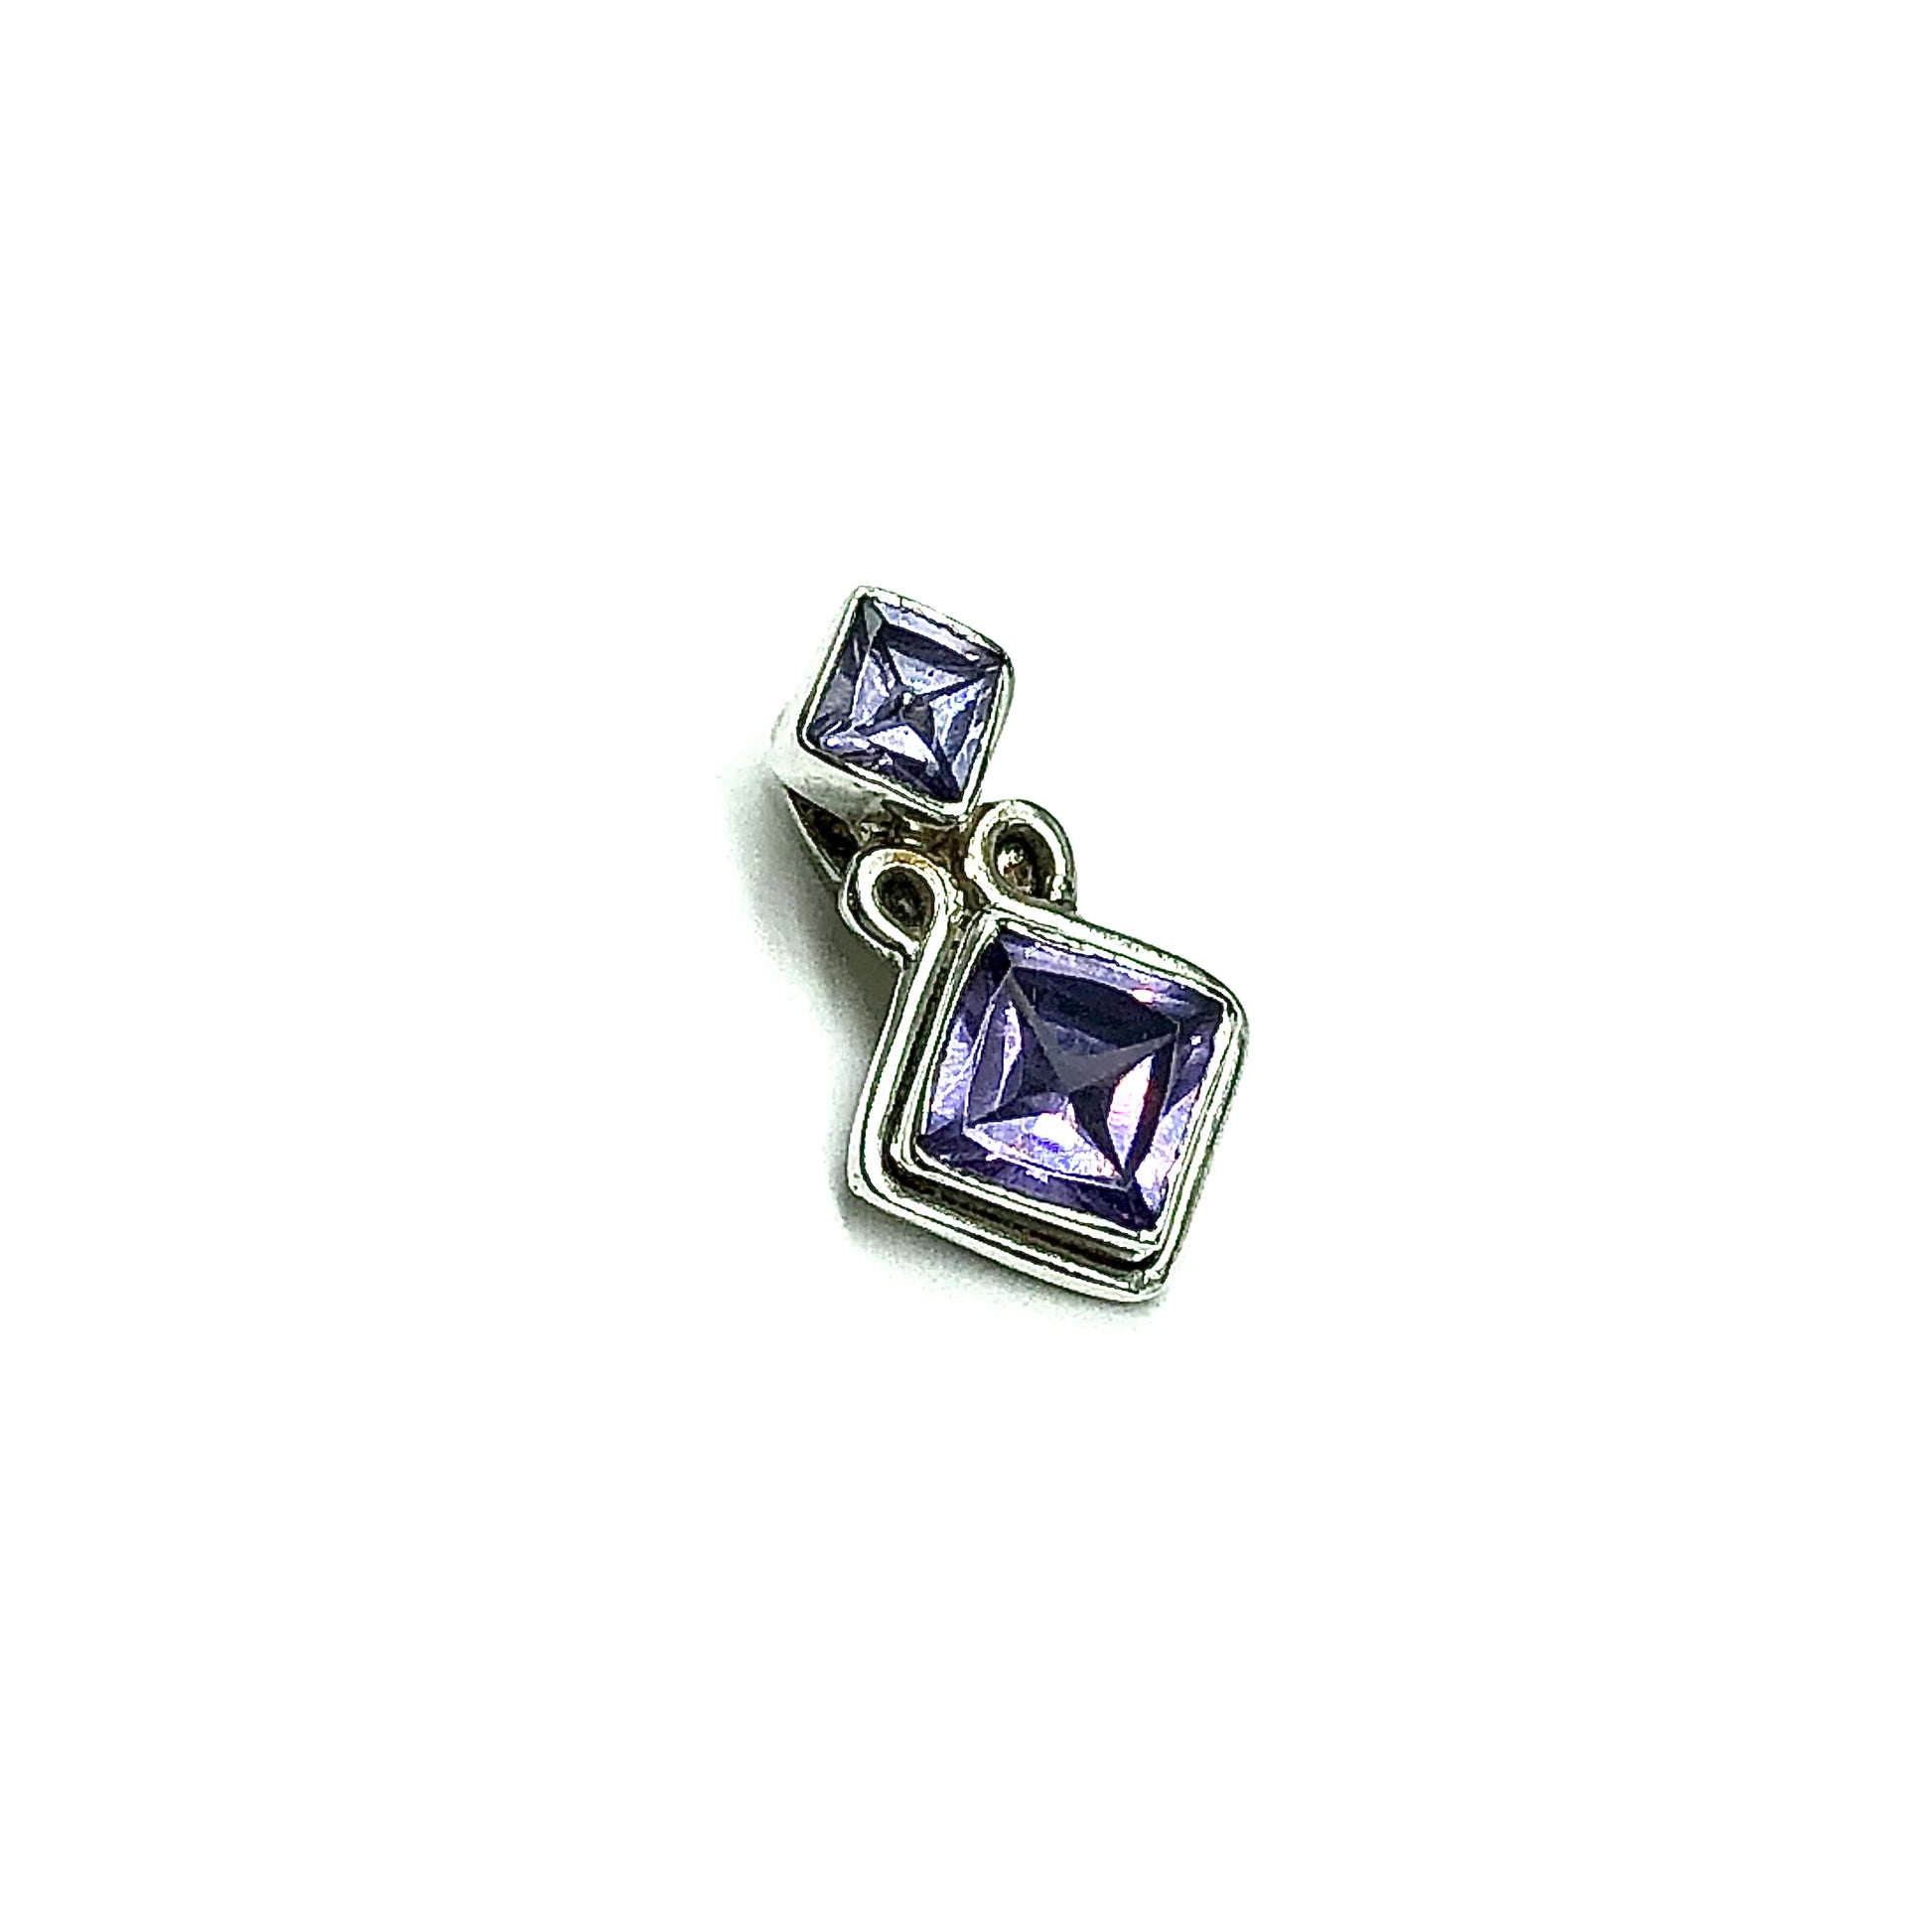 Jewelry | Pendant - Small Sterling Silver Diagonal Square Design Purple Cz 2 Stone Pendant 